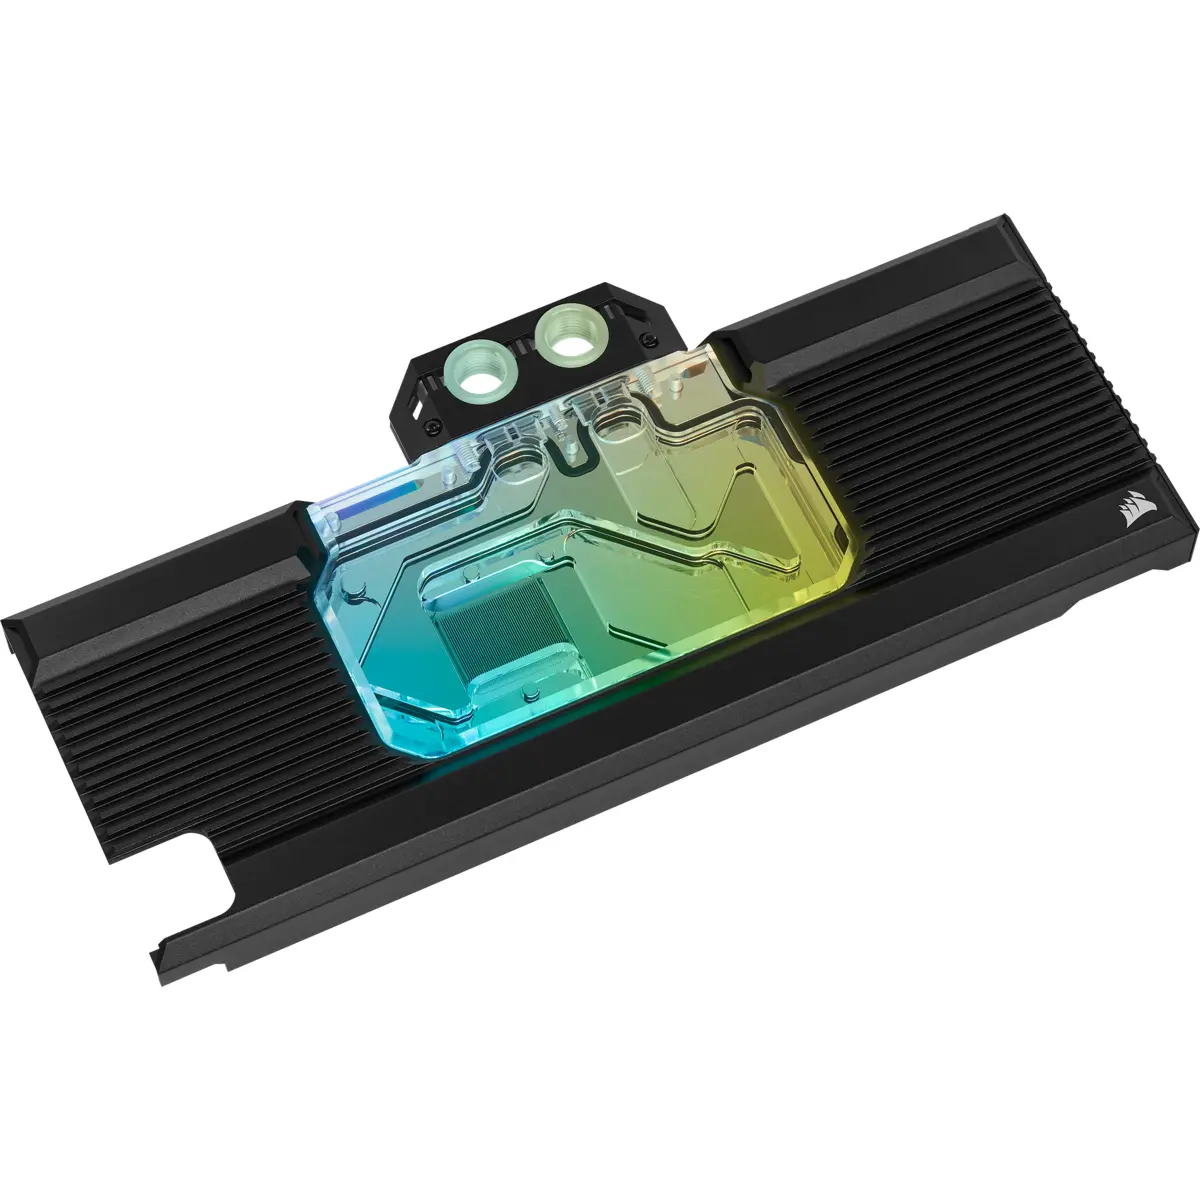 Воден блок за видео карта Corsair Hydro XG7 RGB за RTX 2080 Ti Series Founders Edition - image 2